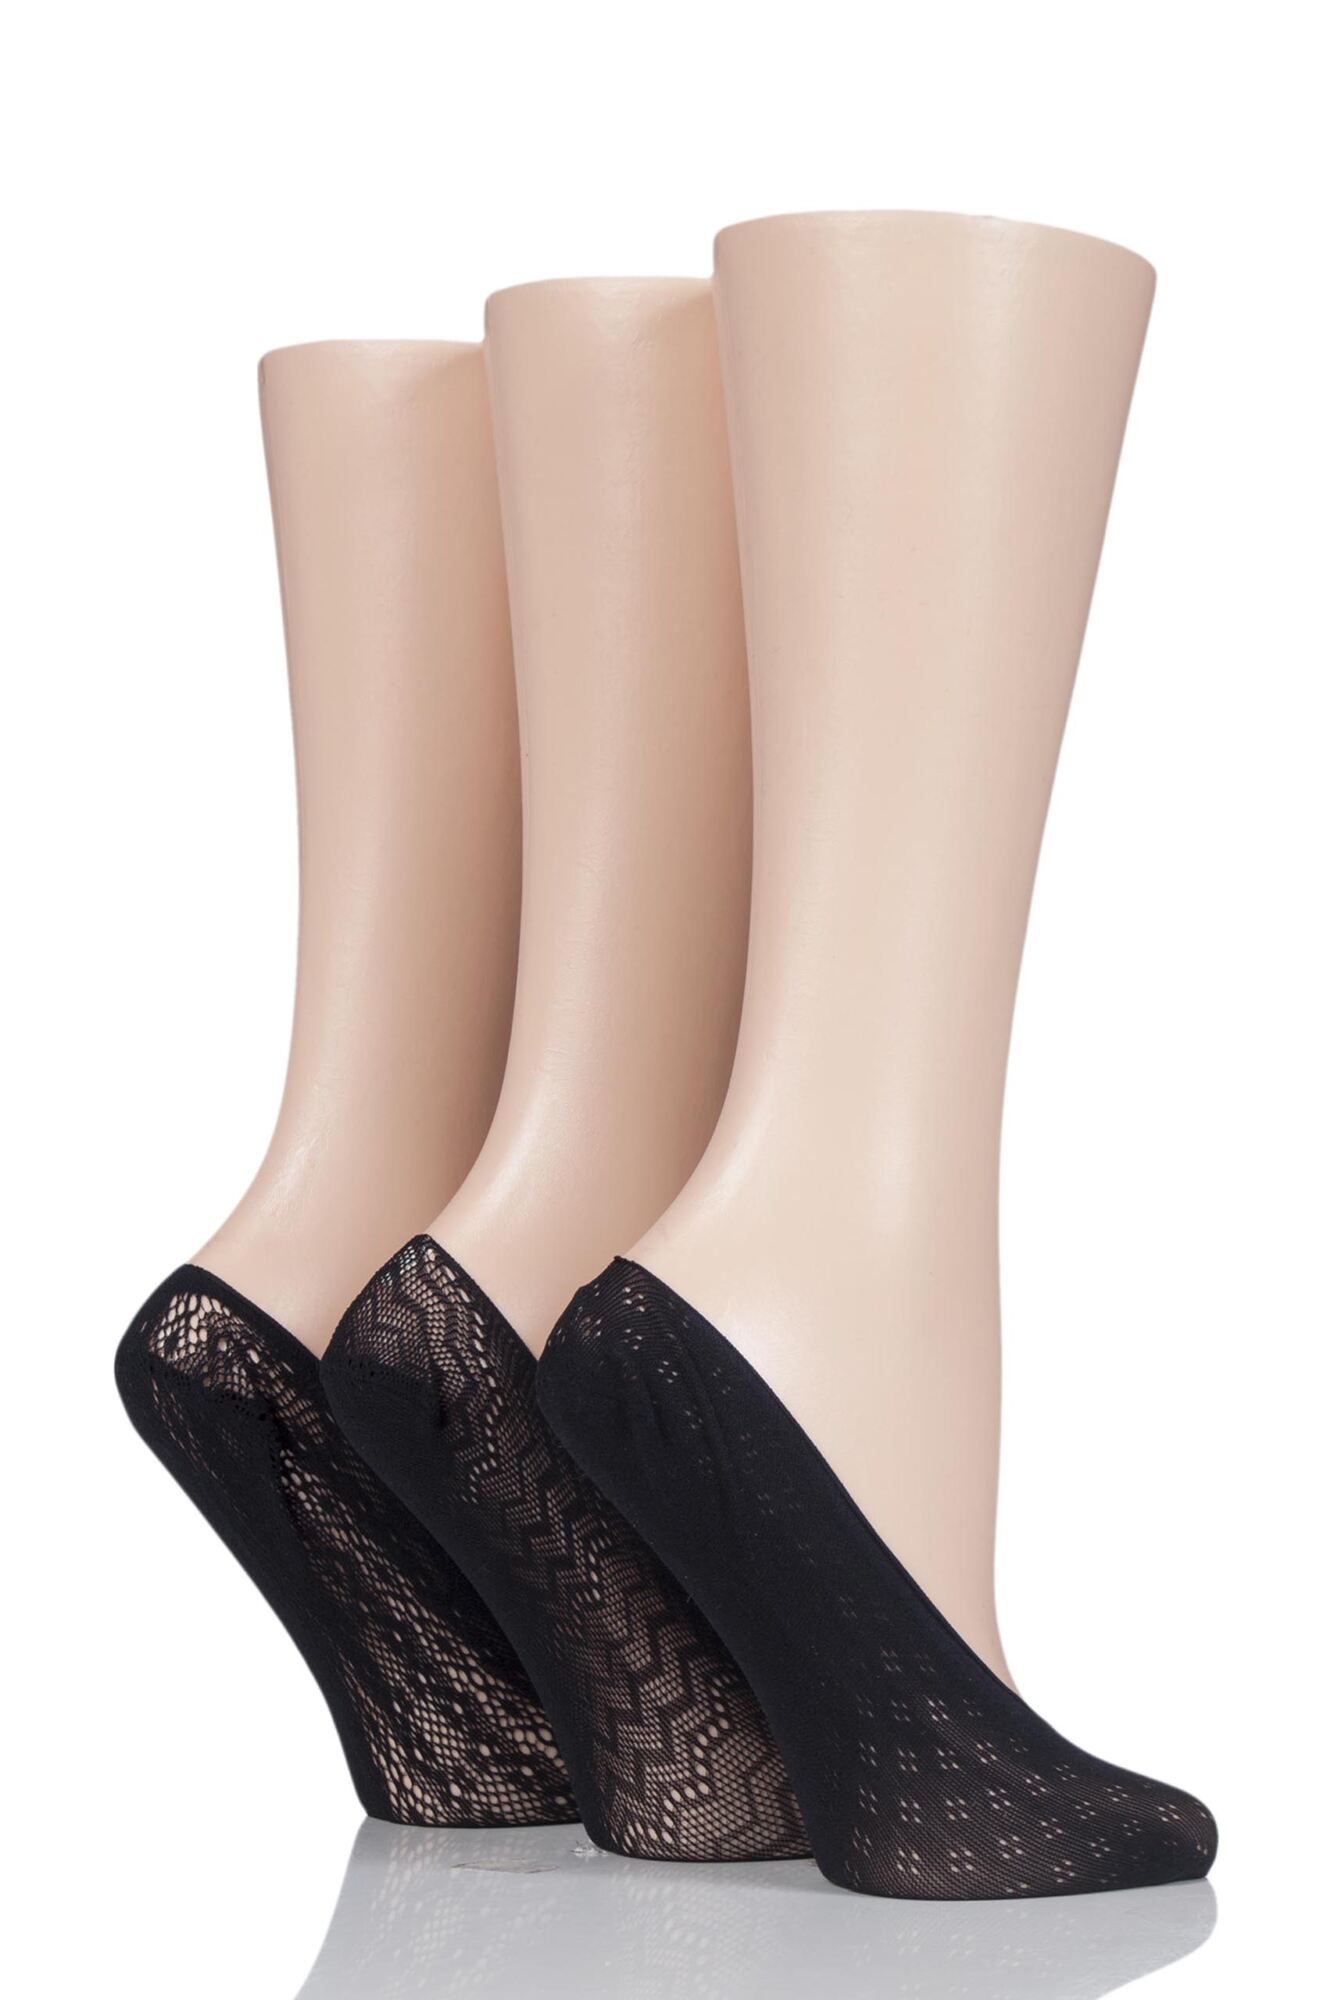 3 Pair Patterned Fishnet Shoe Liner Socks Ladies - Elle